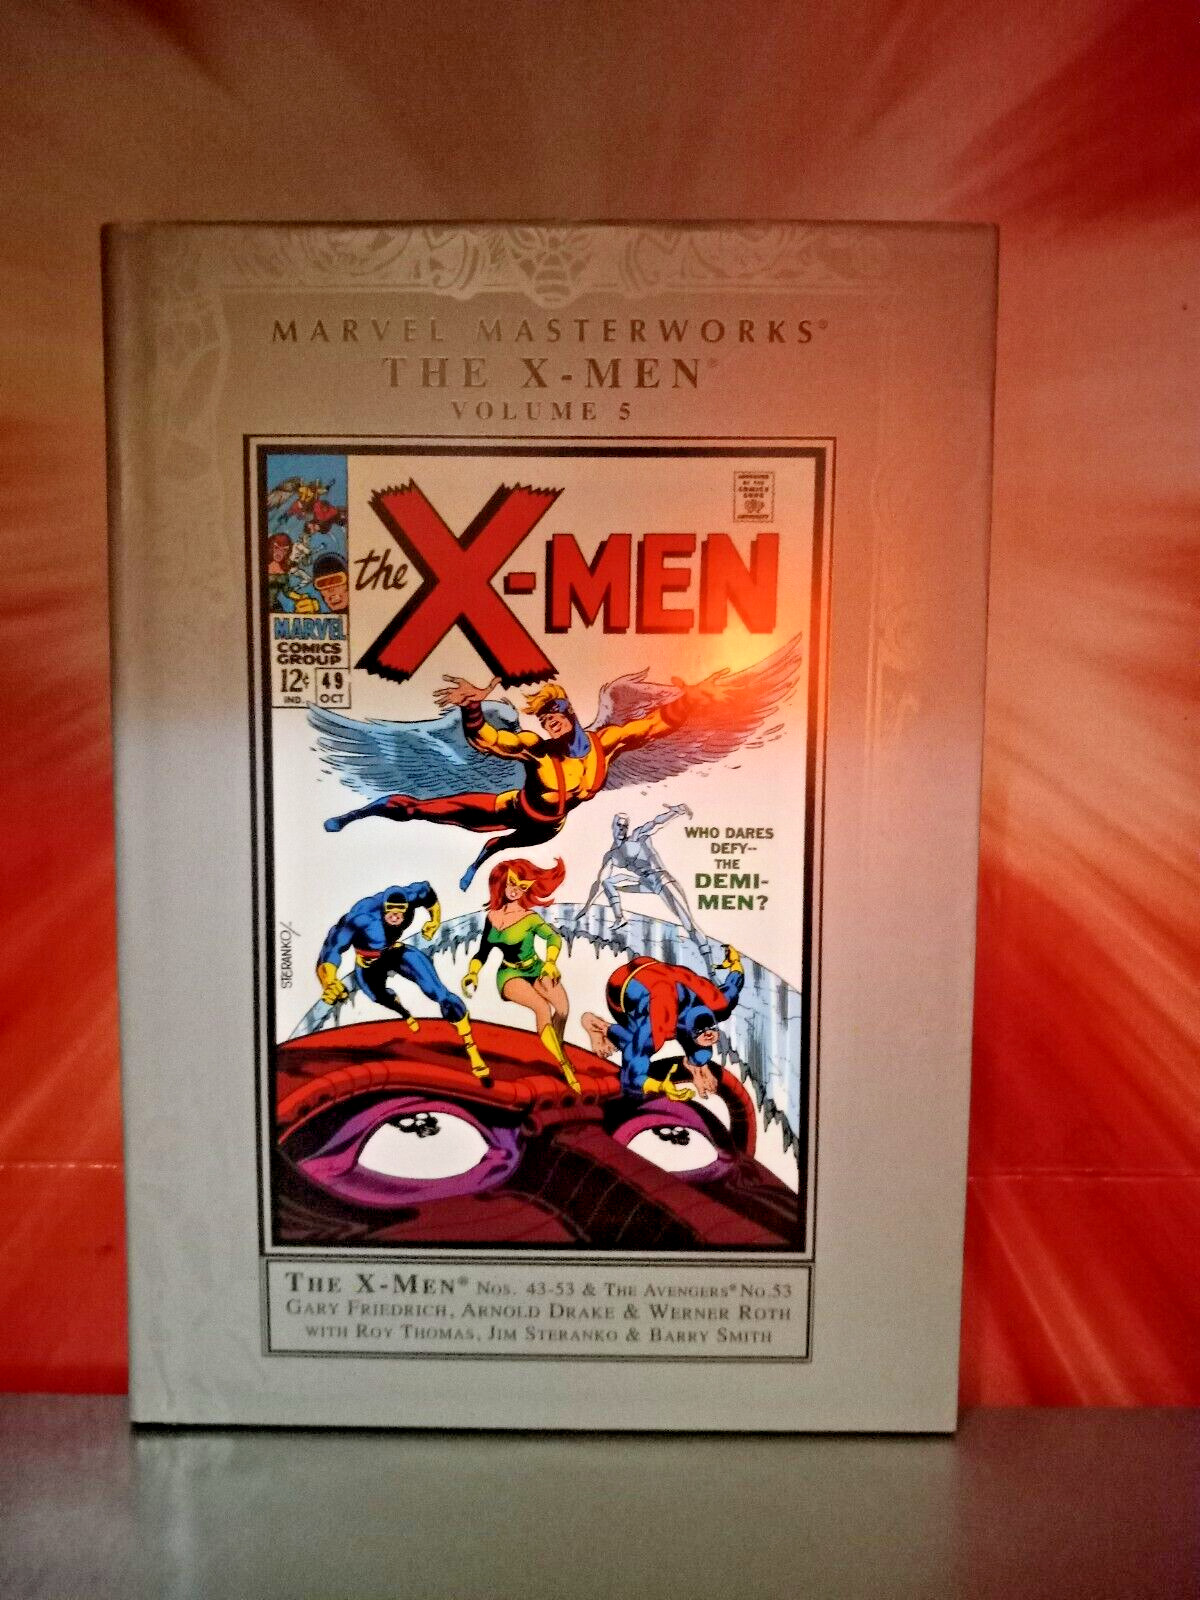 Marvel Masterworks: The X-Men - Volume 5 - Hardcover - 2005 - 1st Print